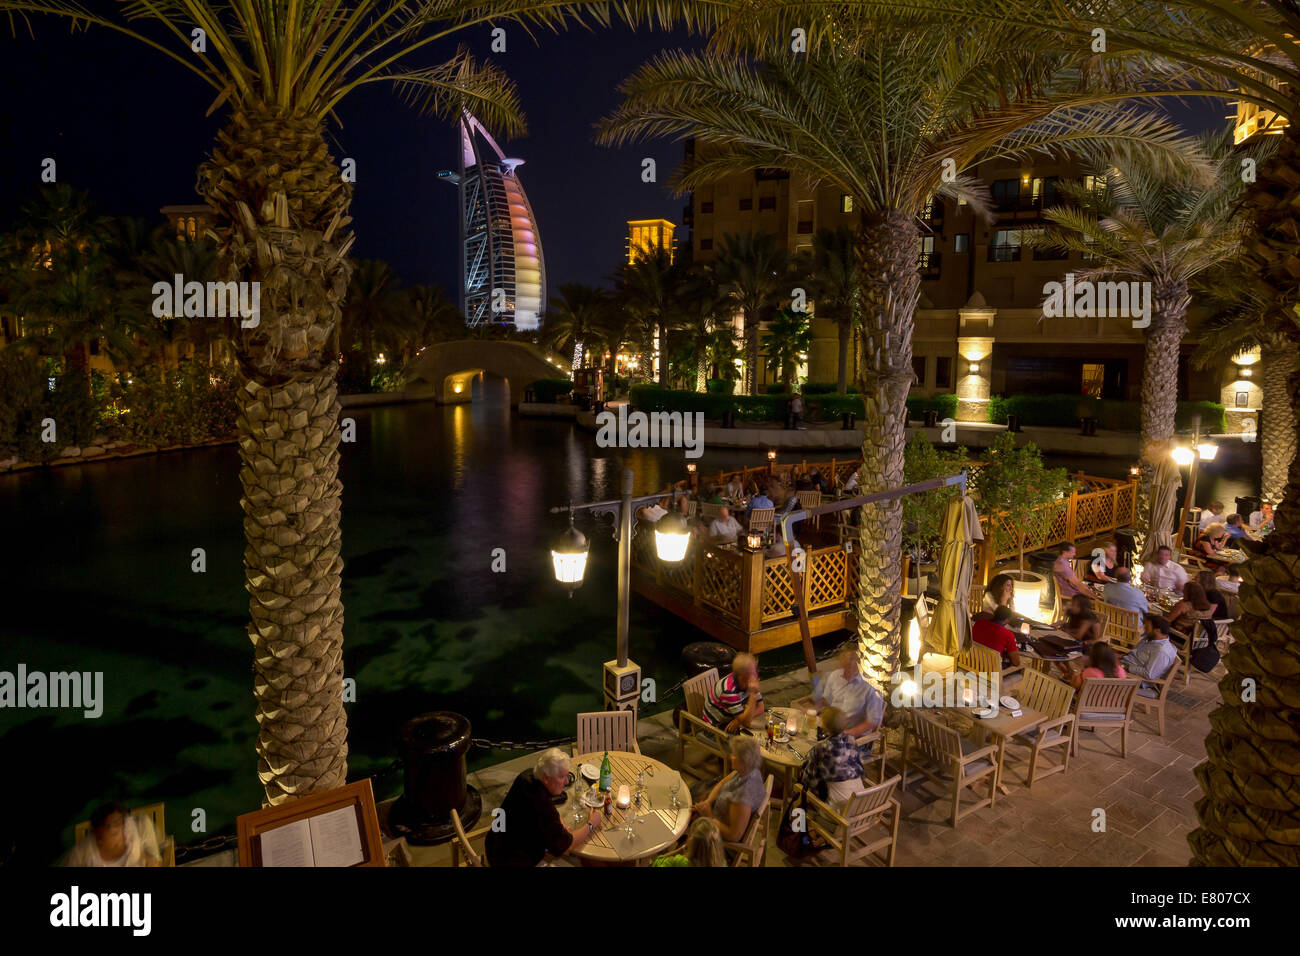 Dubai's Madinat Jumeirah shopping center at night. Stock Photo